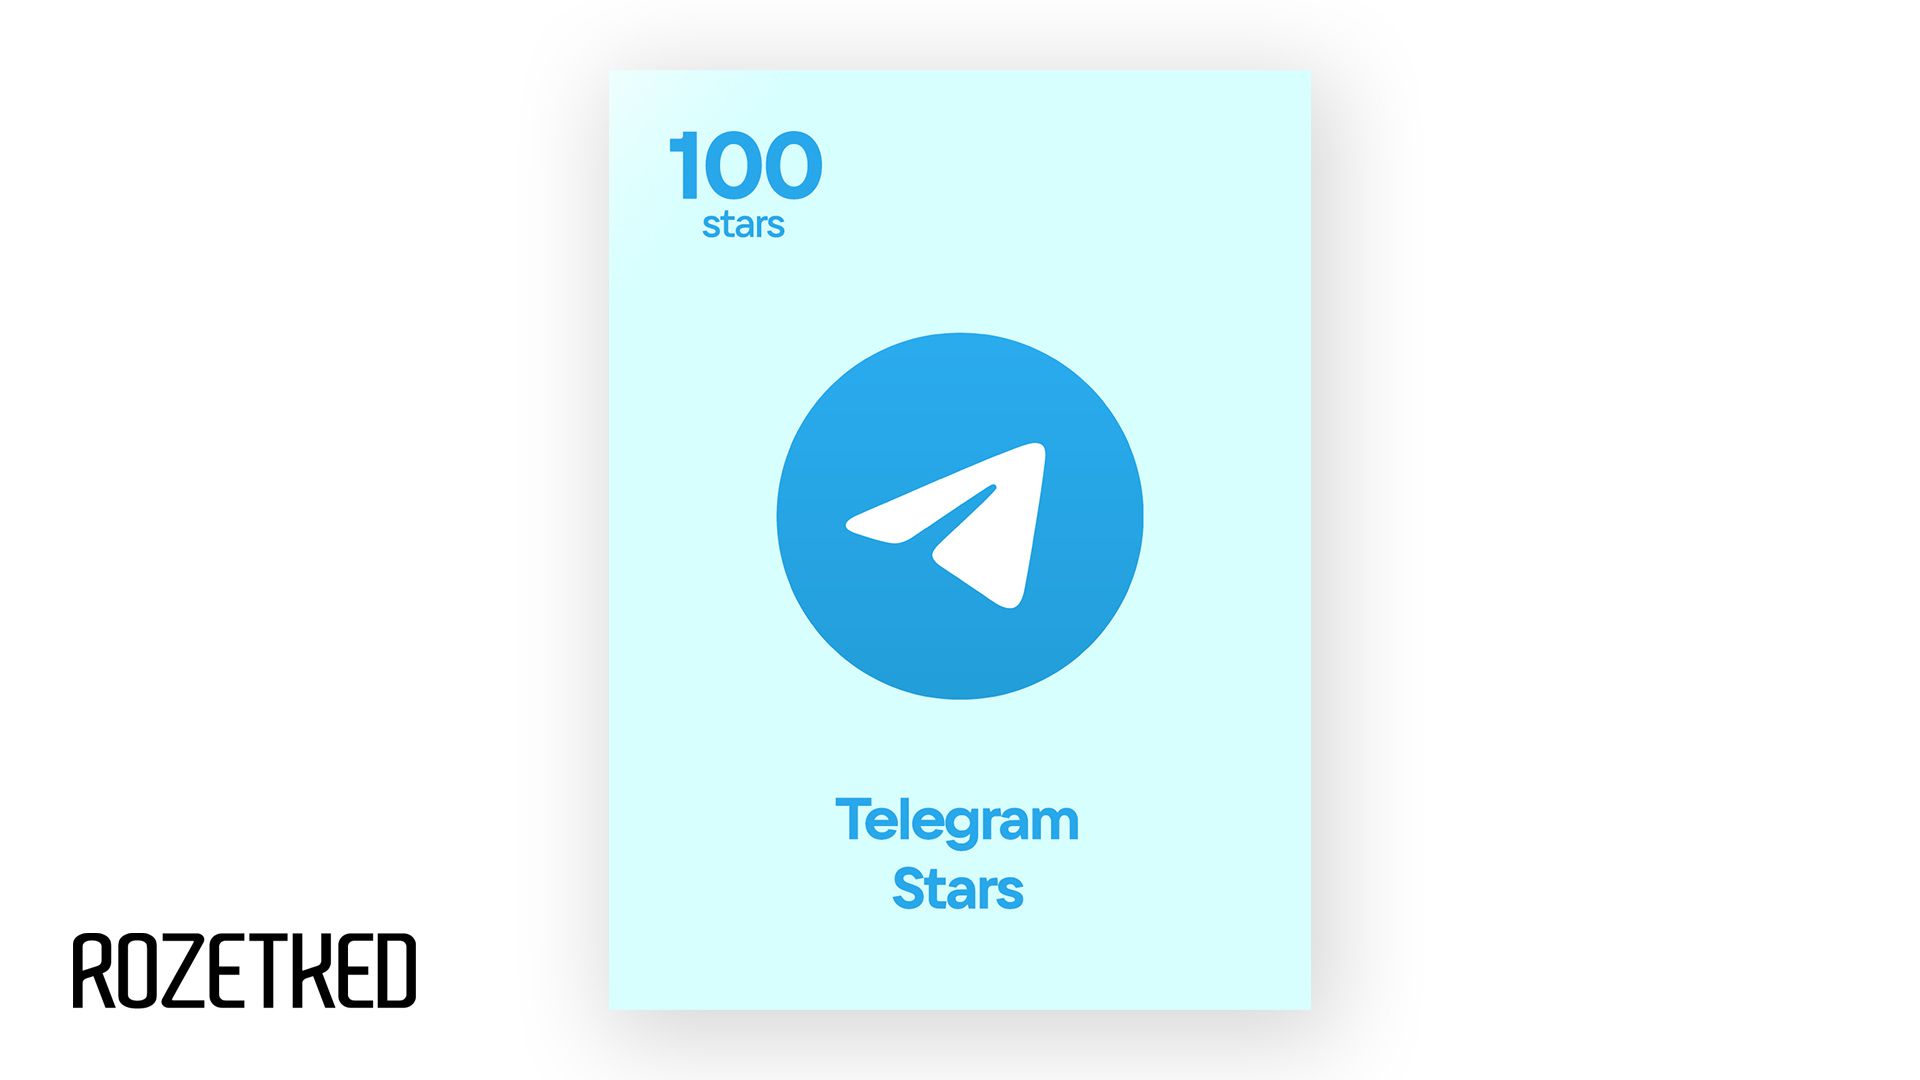 В Telegram появится валюта Stars